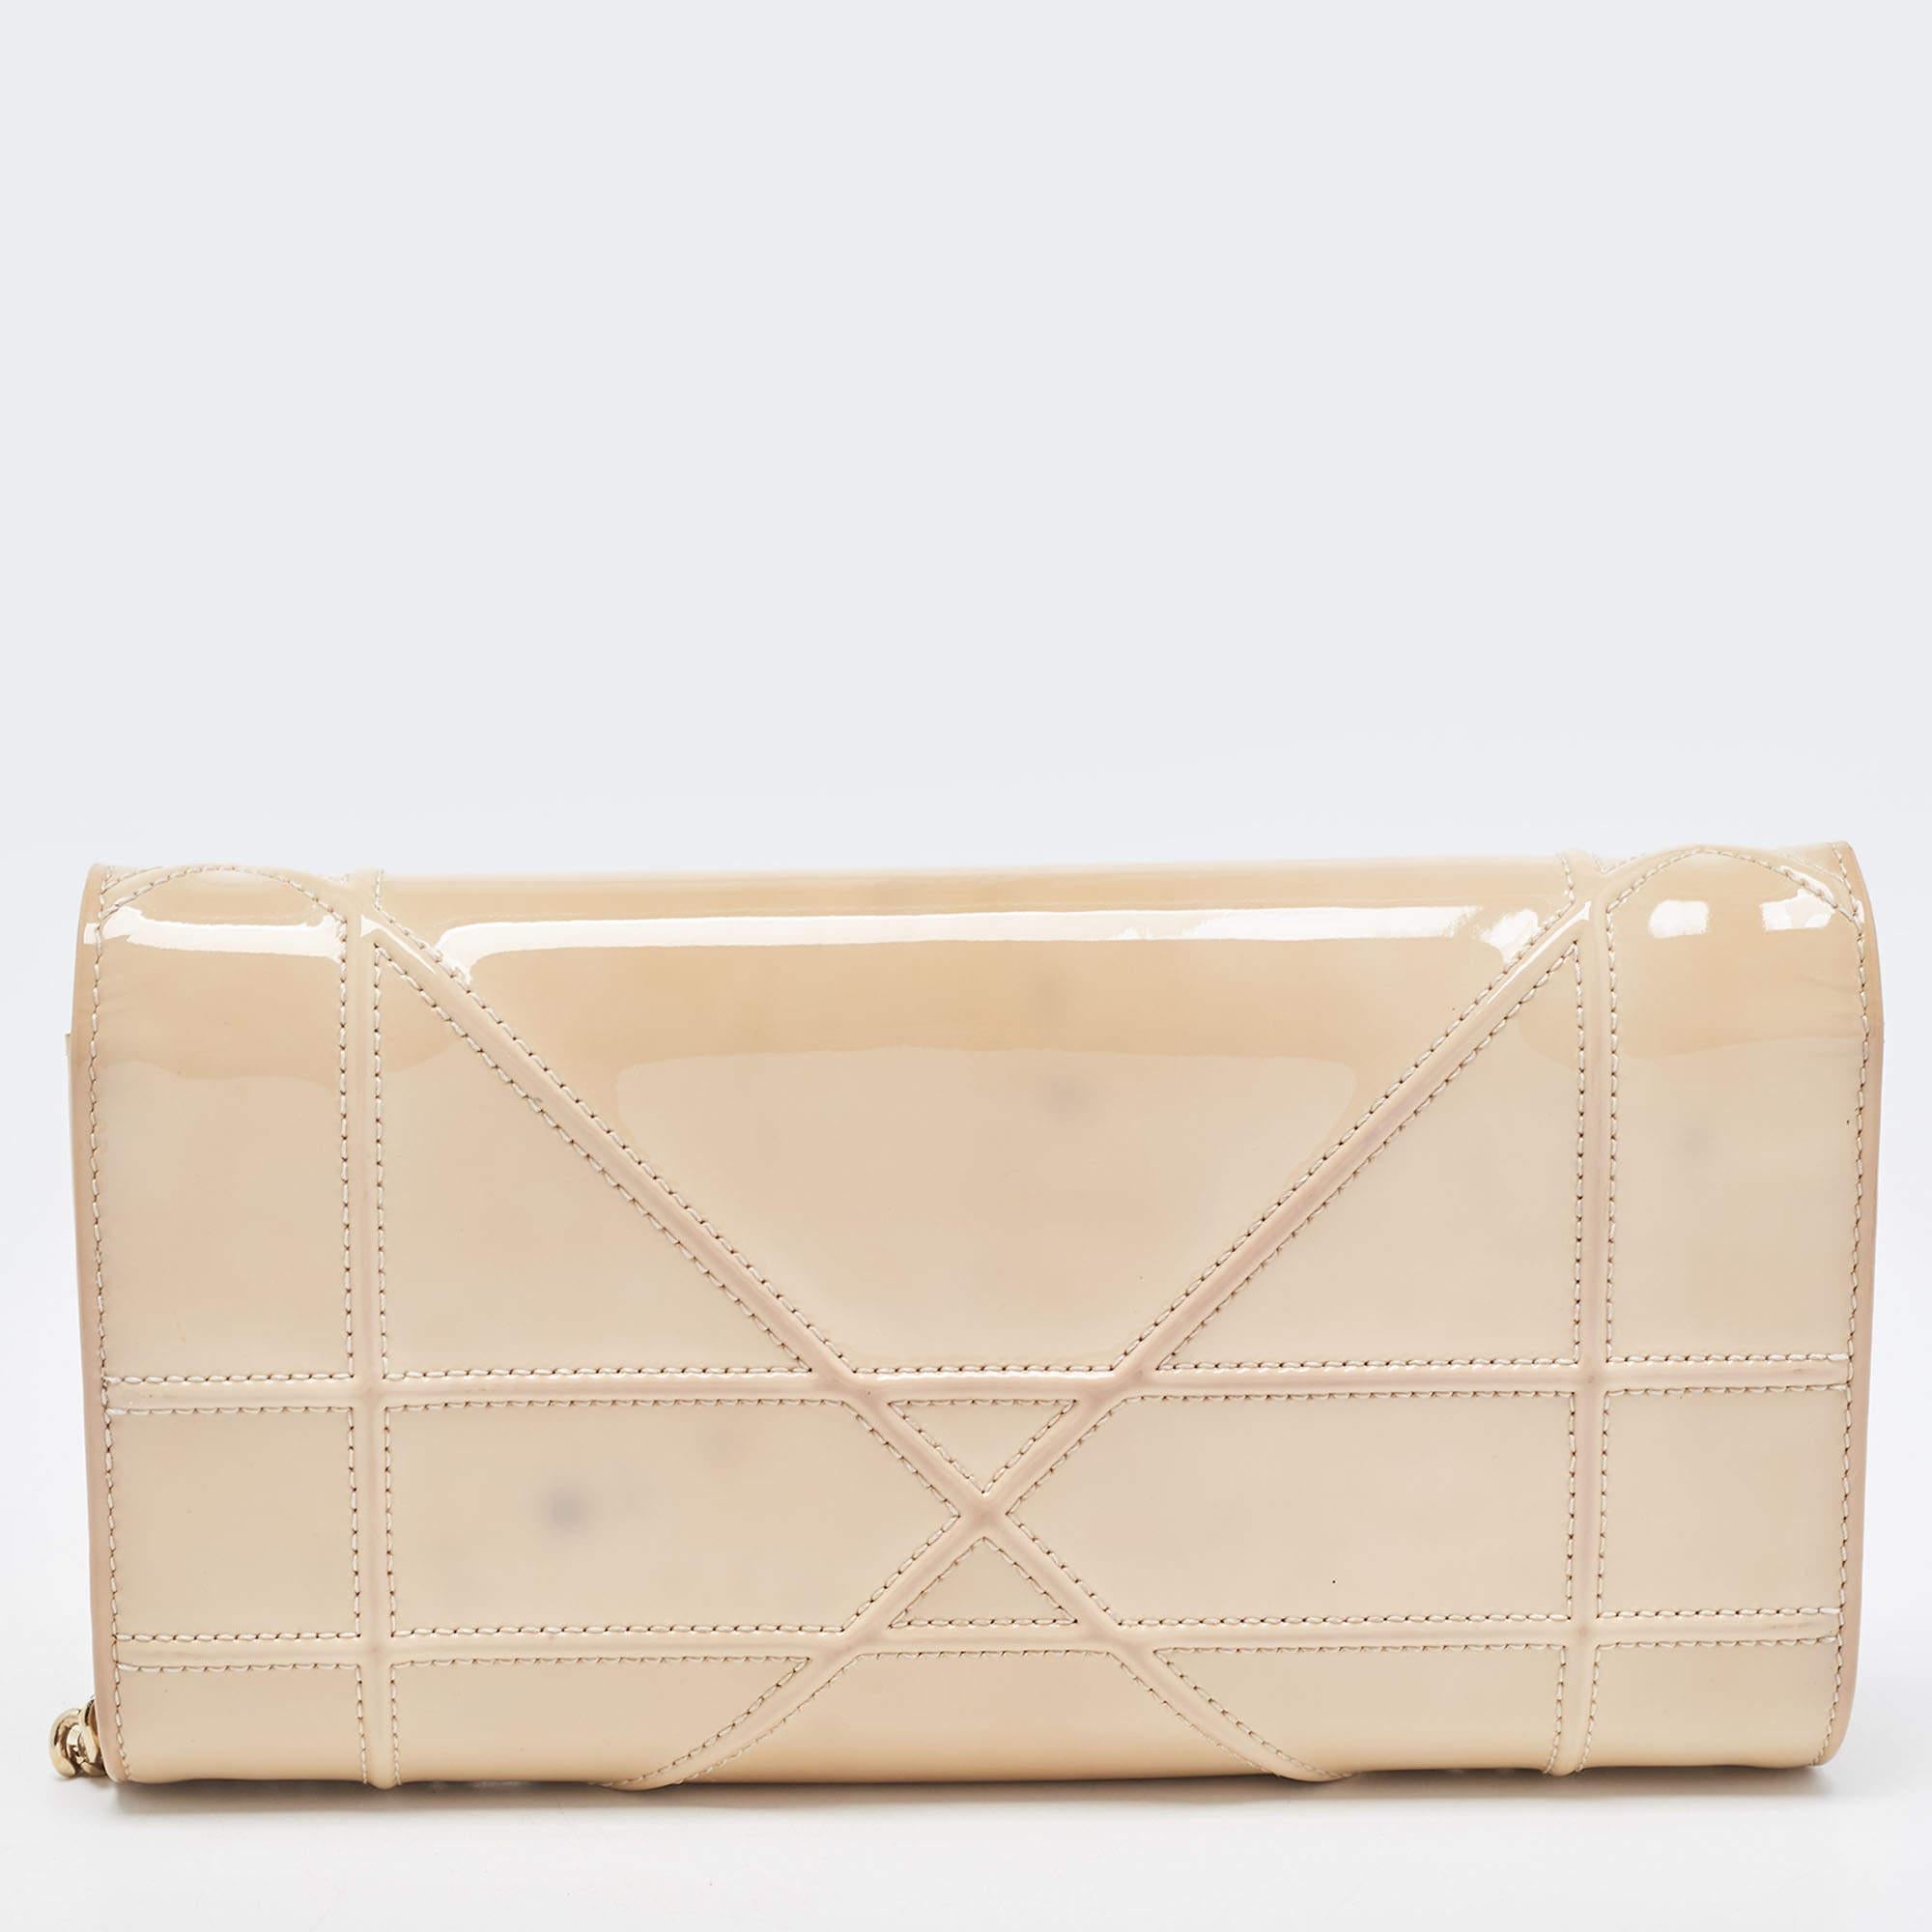 Dior s'assure que vous disposez d'un merveilleux accessoire pour vous accompagner au quotidien avec ce sac bien conçu. Il a un look caractéristique et une taille pratique.

Comprend : Sac à poussière original, boîte originale, étiquette de marque,